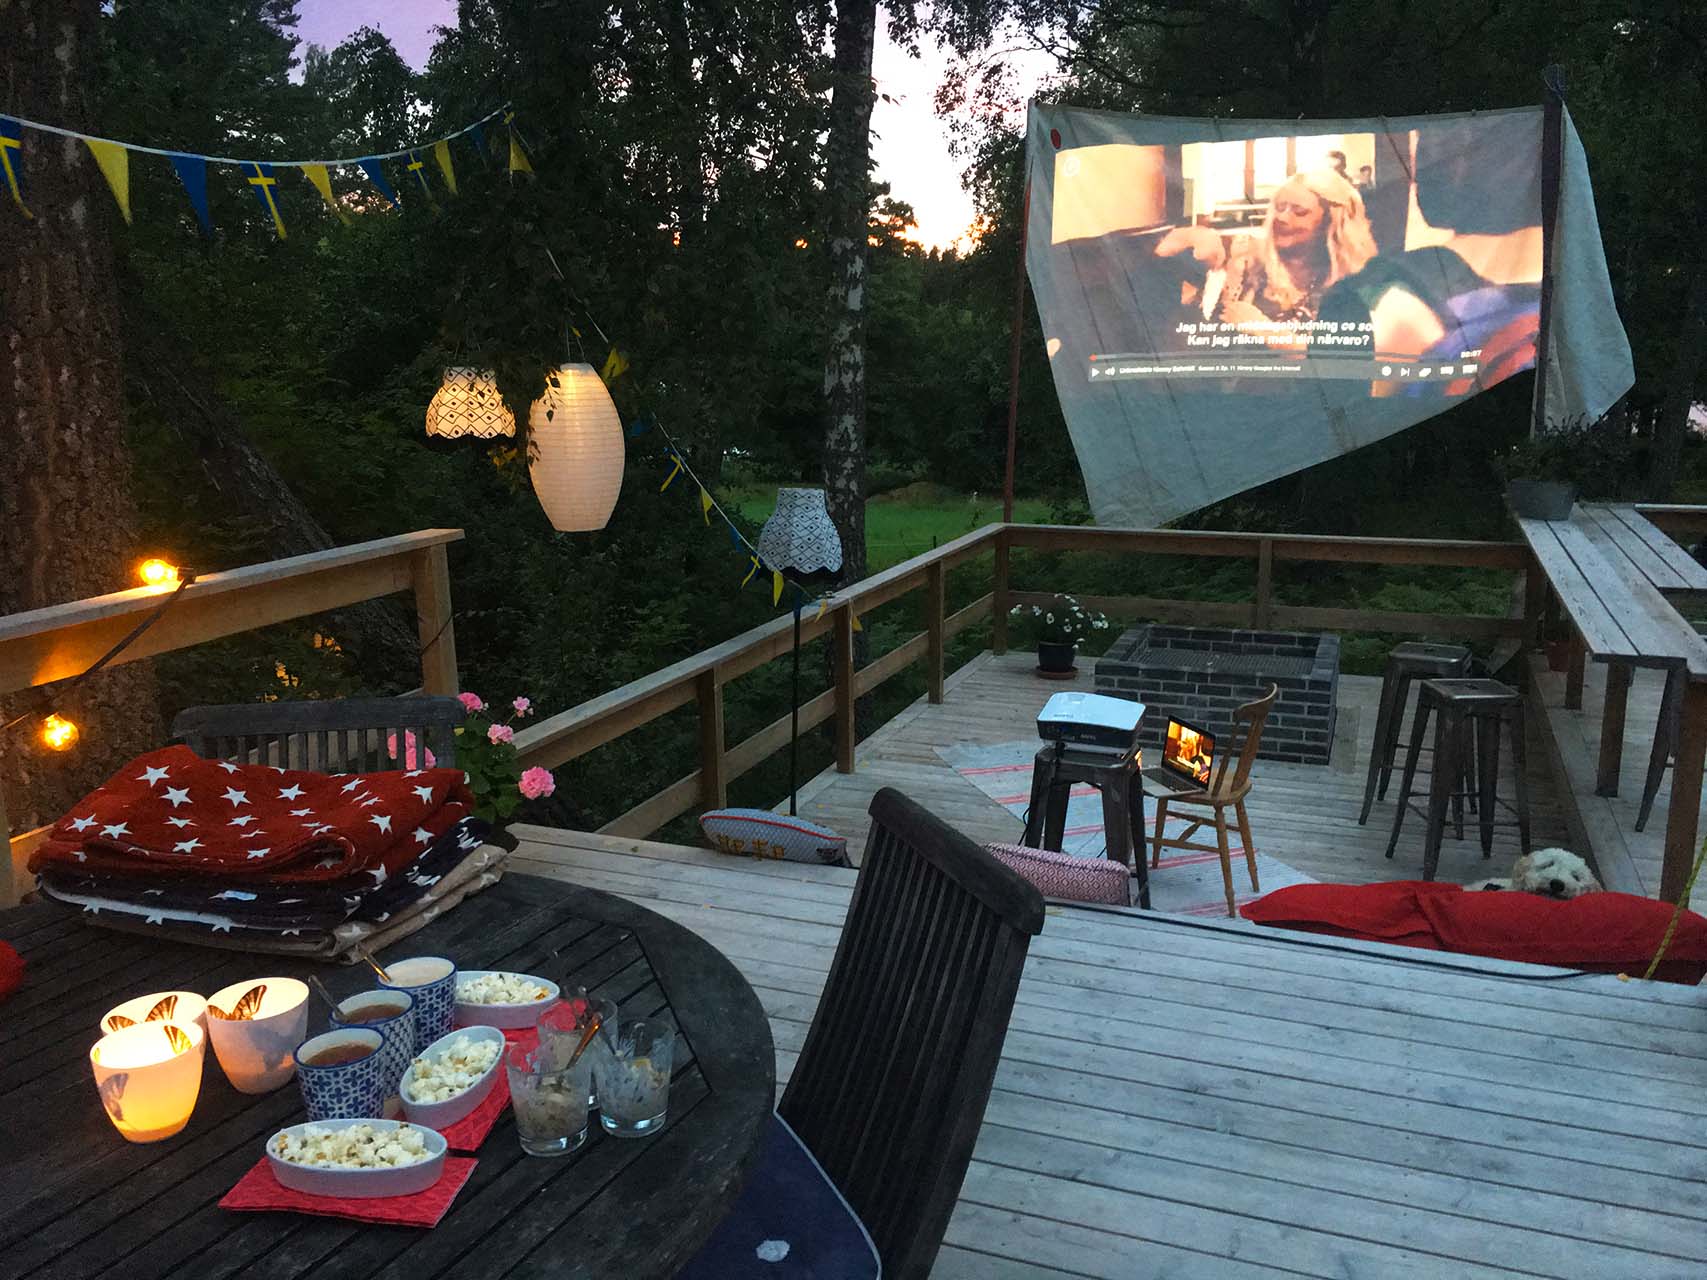 Utomhusbio en kväll på en veranda med utekök, bar och murad eldstad. Filmen visas på en segelduk. Arkitekt är Anders Frelin.